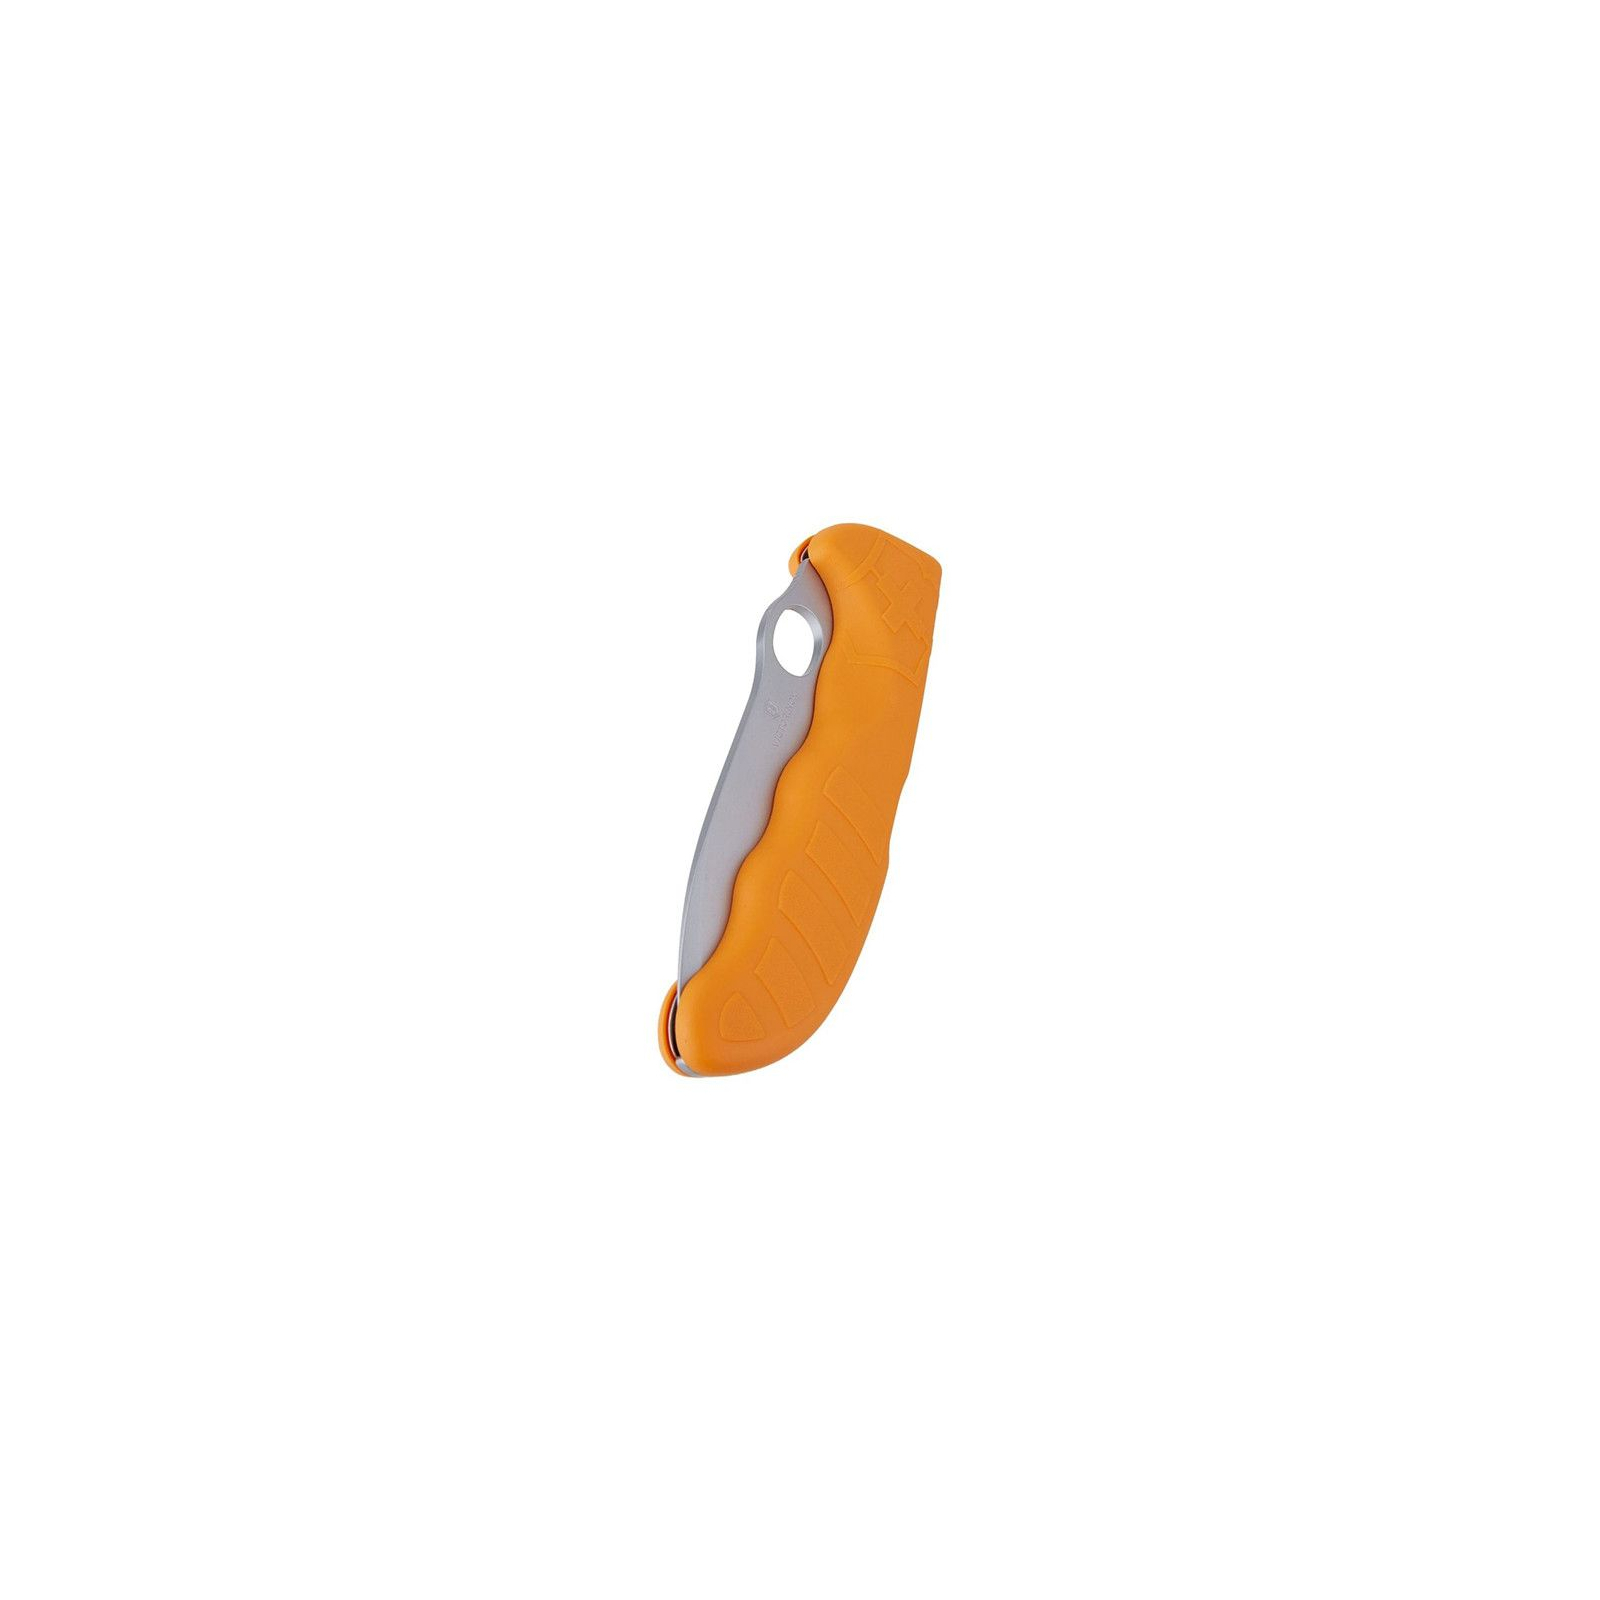 Нож Victorinox Hunter Pro оранжевый с чехлом (0.9410.9) изображение 3